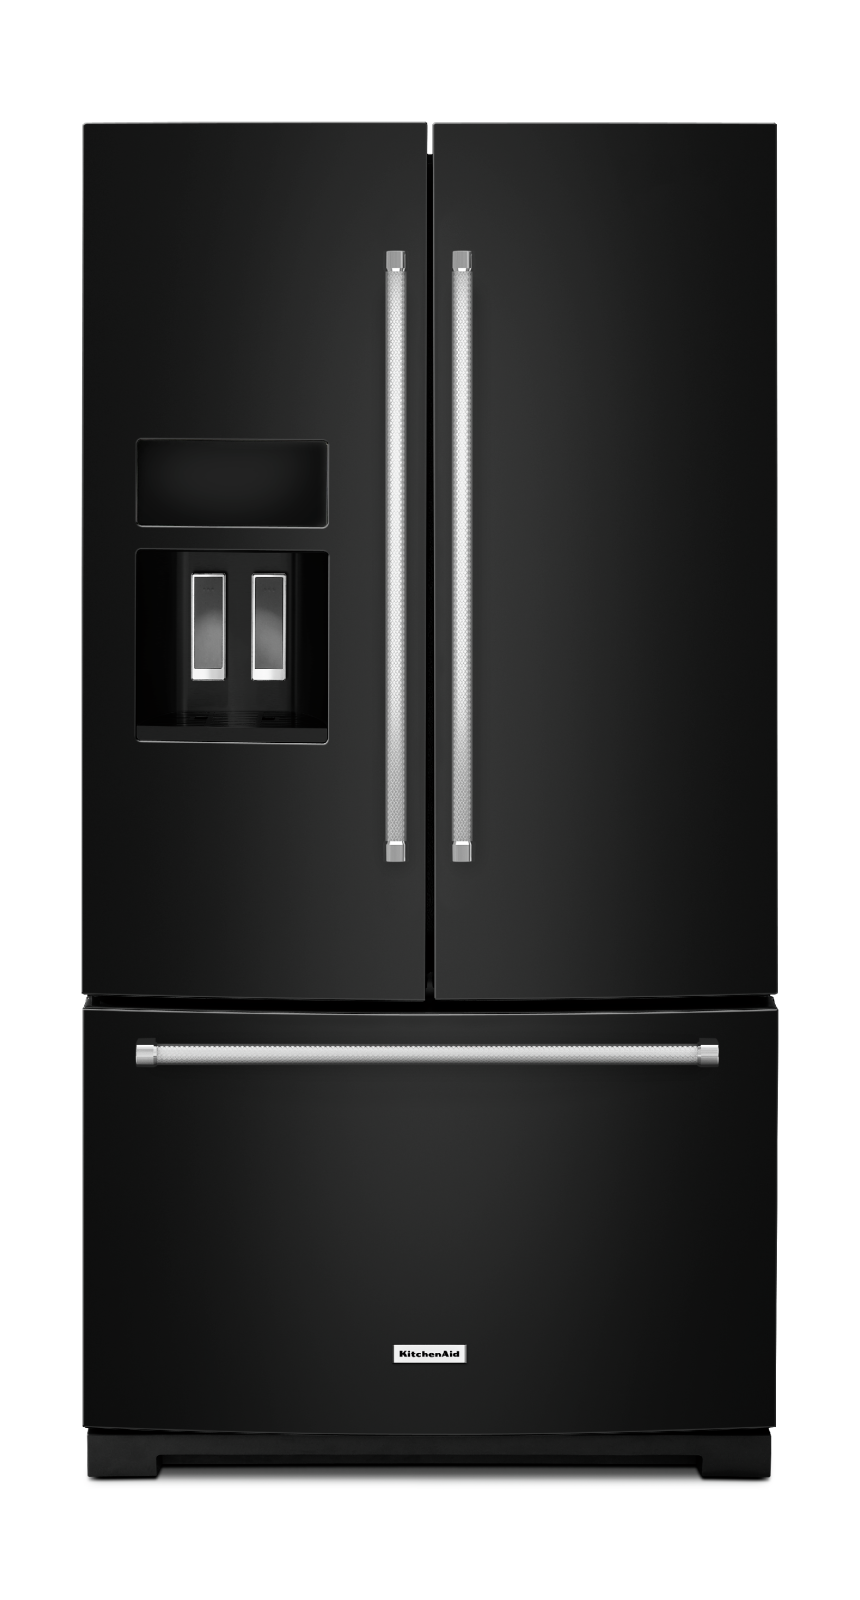 KitchenAid - 35.63 Inch 26.8 cu. ft French Door Refrigerator in Black - KRFF507EBL